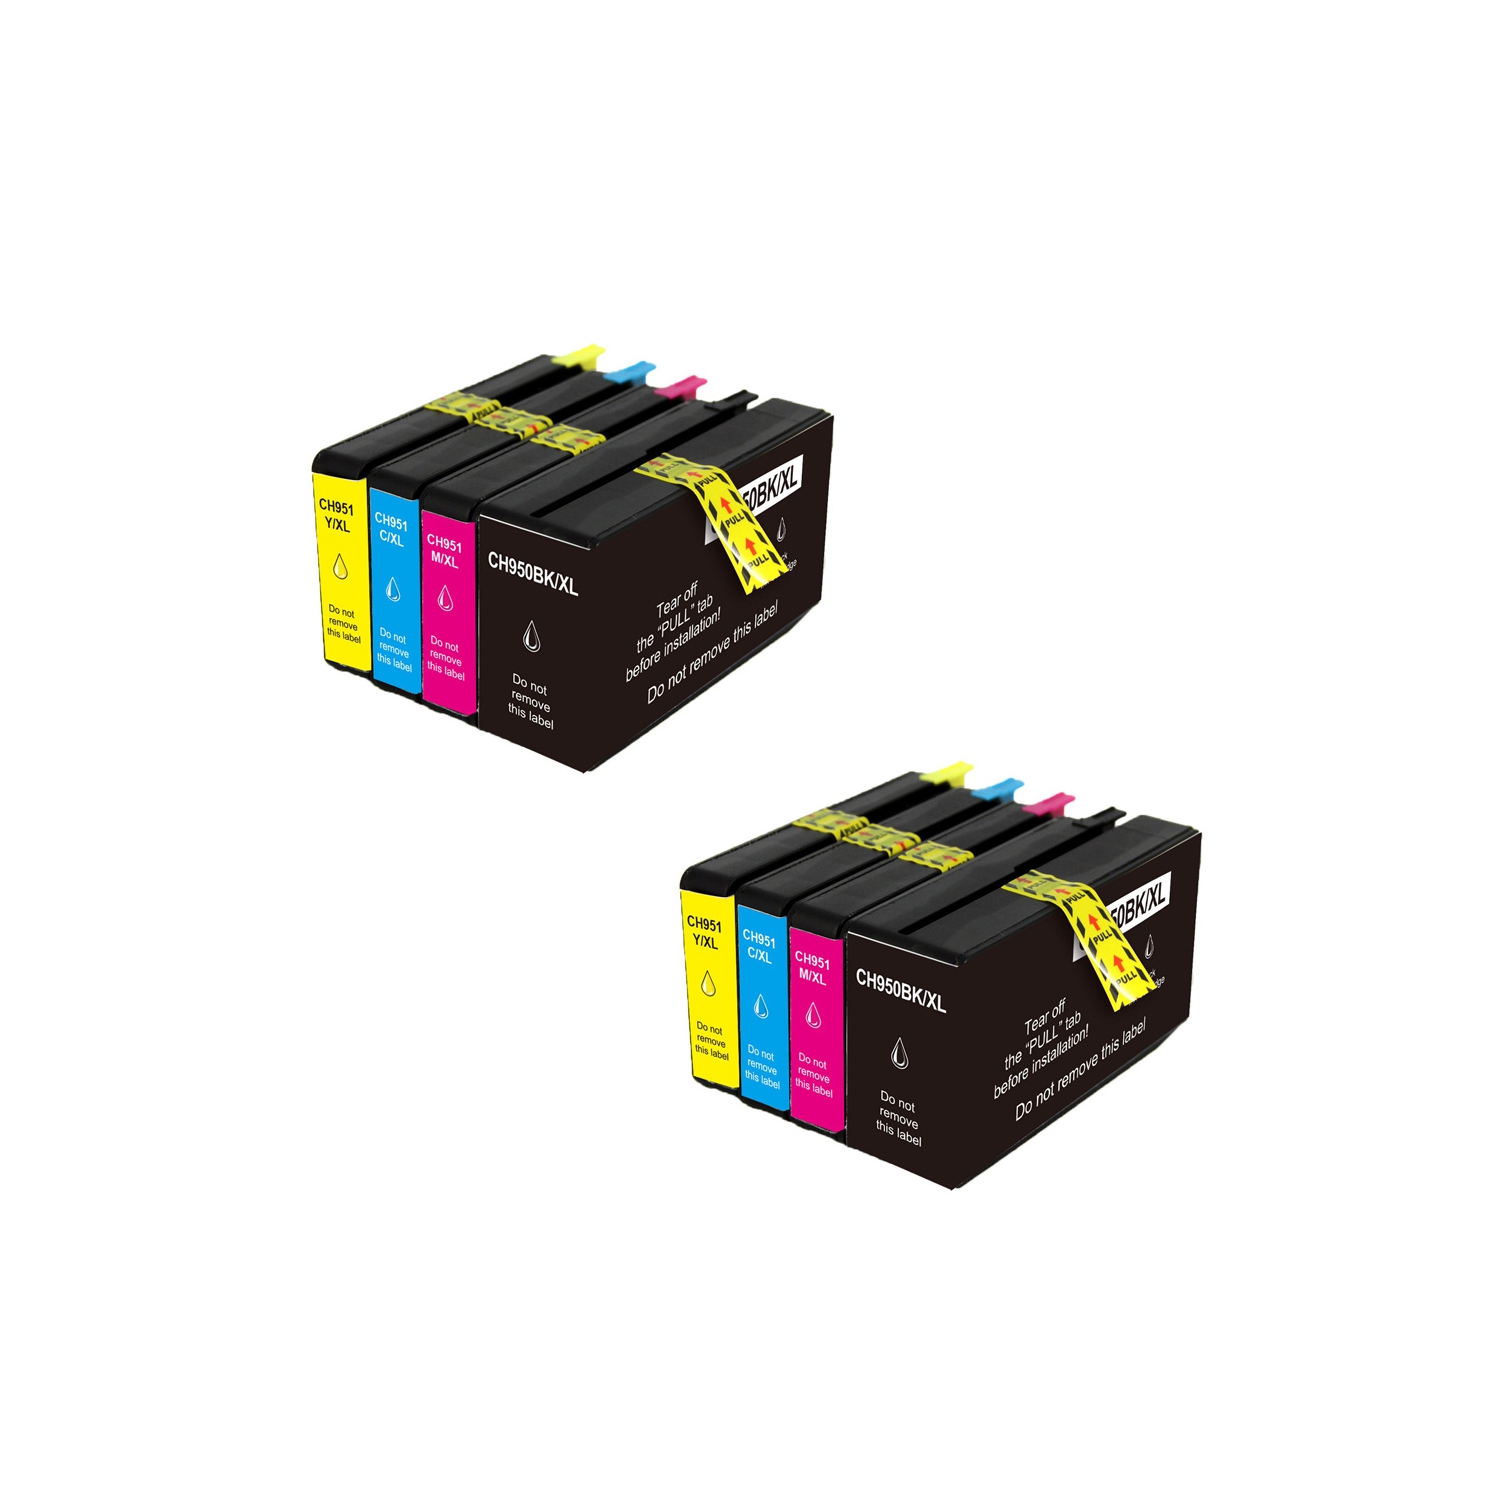 axGear Compatible HP 950XL 951XL Ink Cartridge Combo High Yield 2BK/2C/2M/2Y HP Officejet Pro 8610